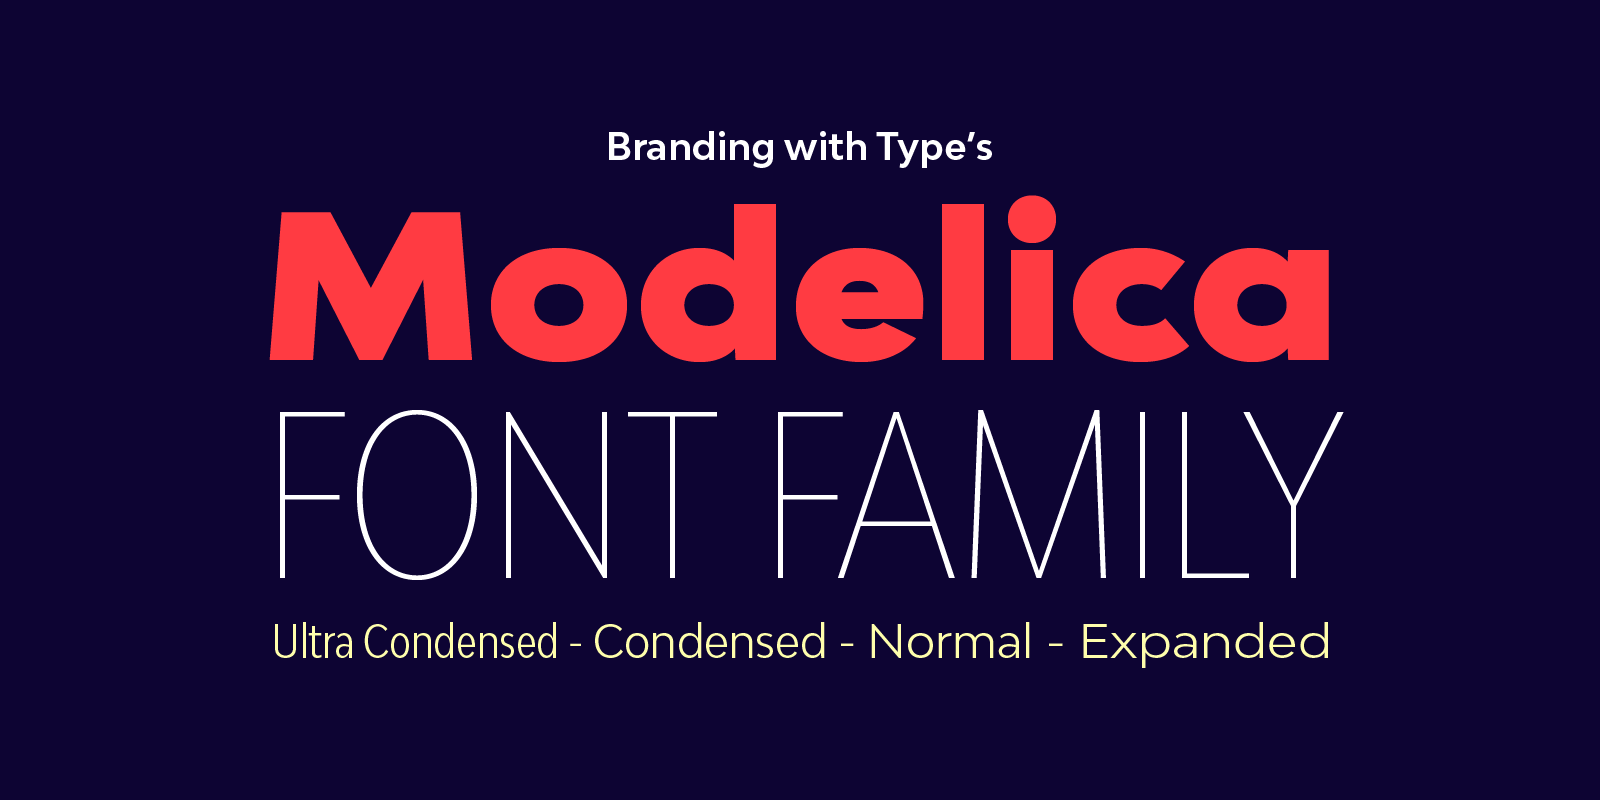 Extending the Bw Modelica font family